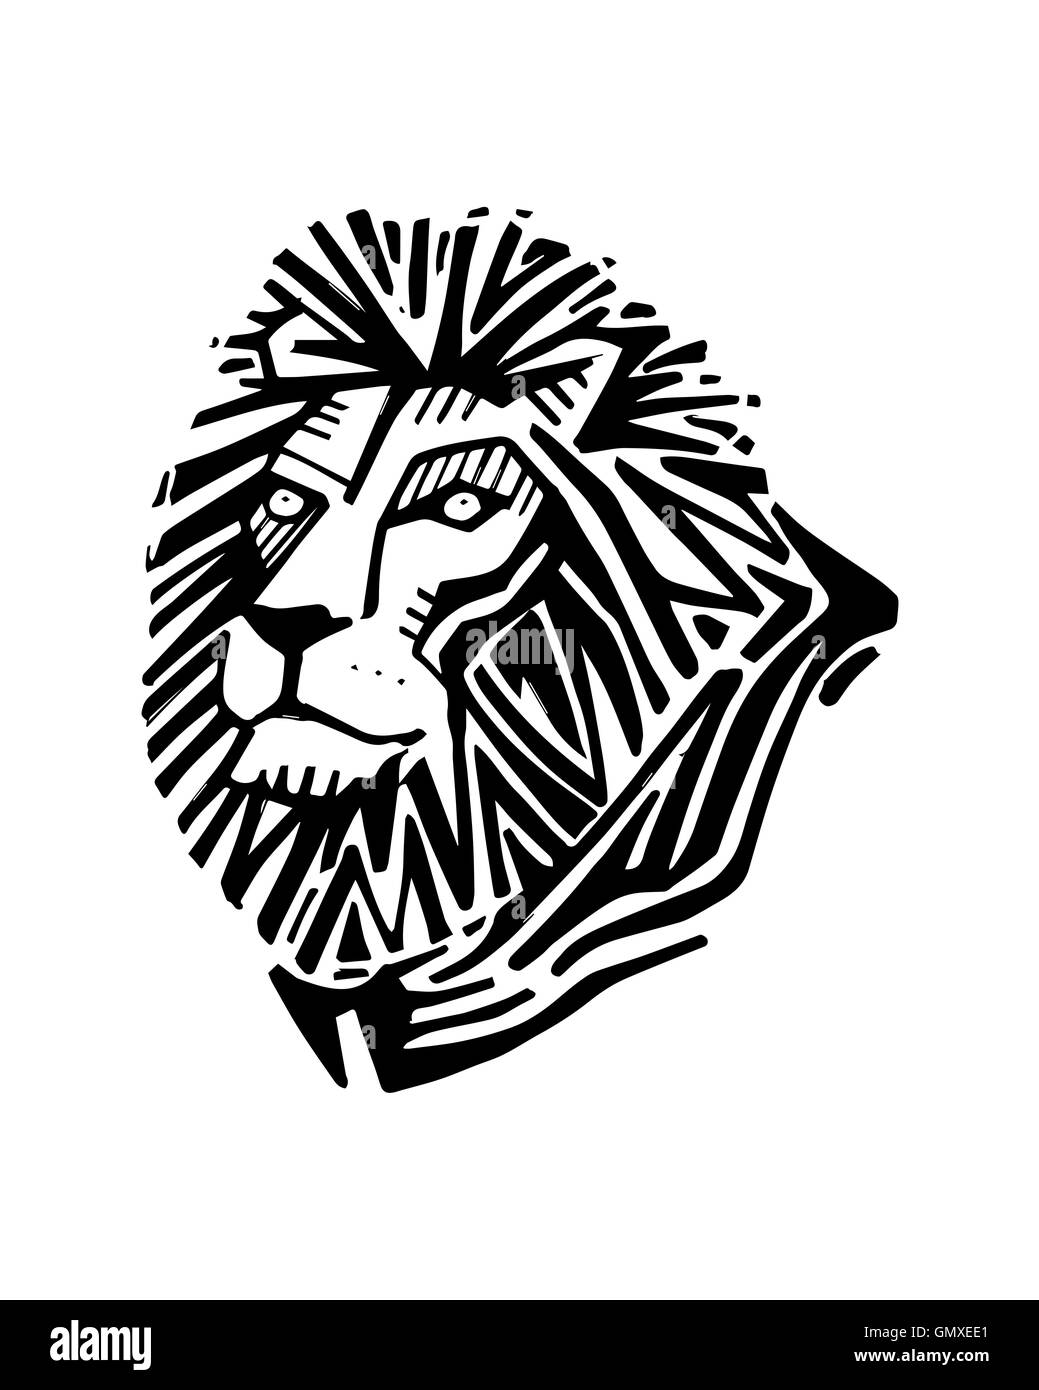 Ilustración dibujada a mano o un dibujo de una cabeza de león Foto de stock